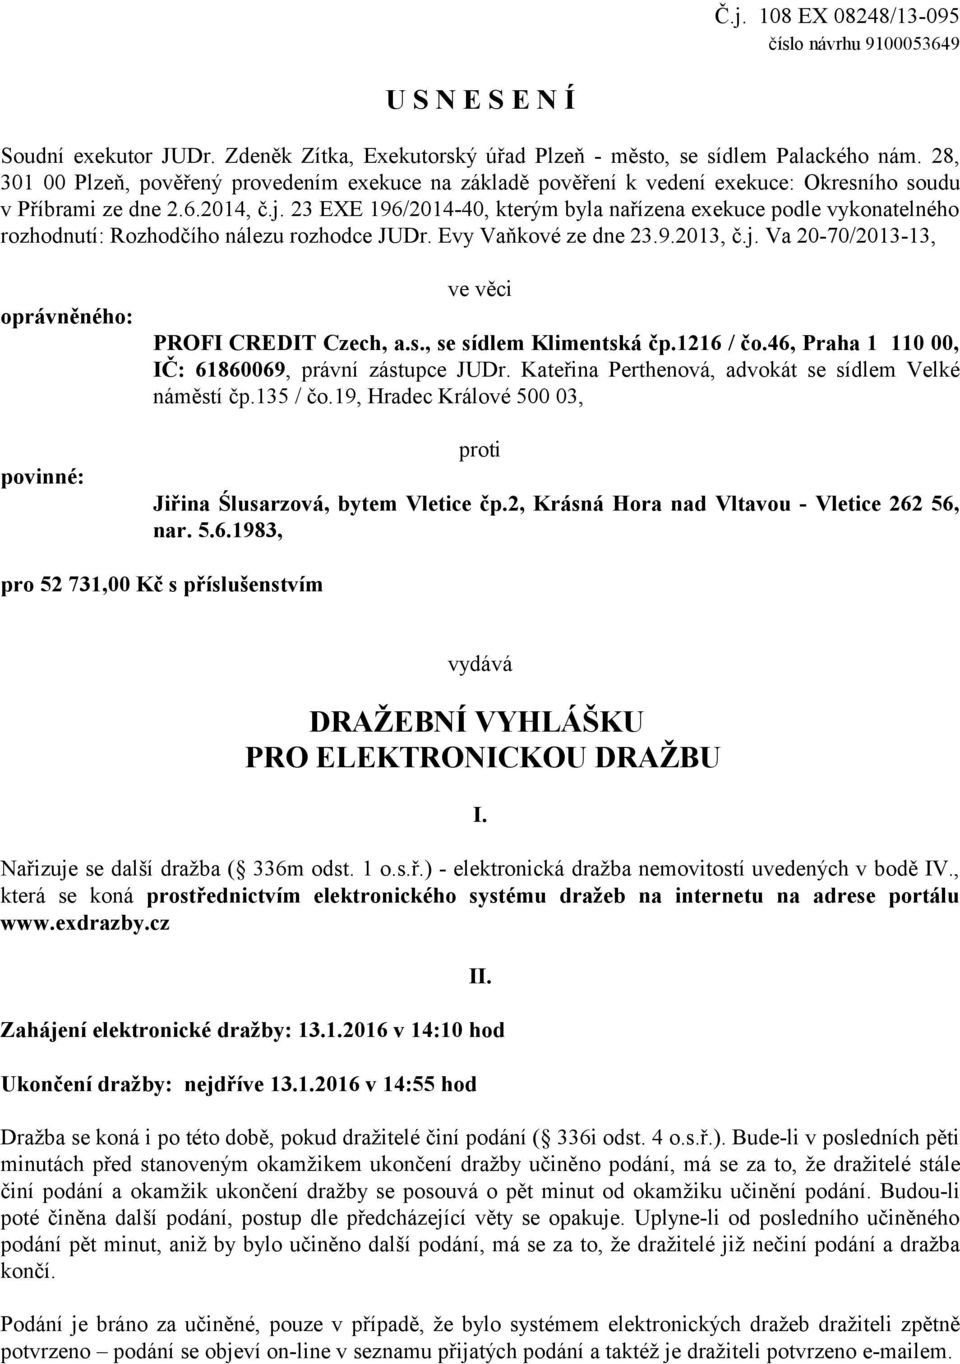 23 EXE 196/2014-40, kterým byla nařízena exekuce podle vykonatelného rozhodnutí: Rozhodčího nálezu rozhodce JUDr. Evy Vaňkové ze dne 23.9.2013, č.j.